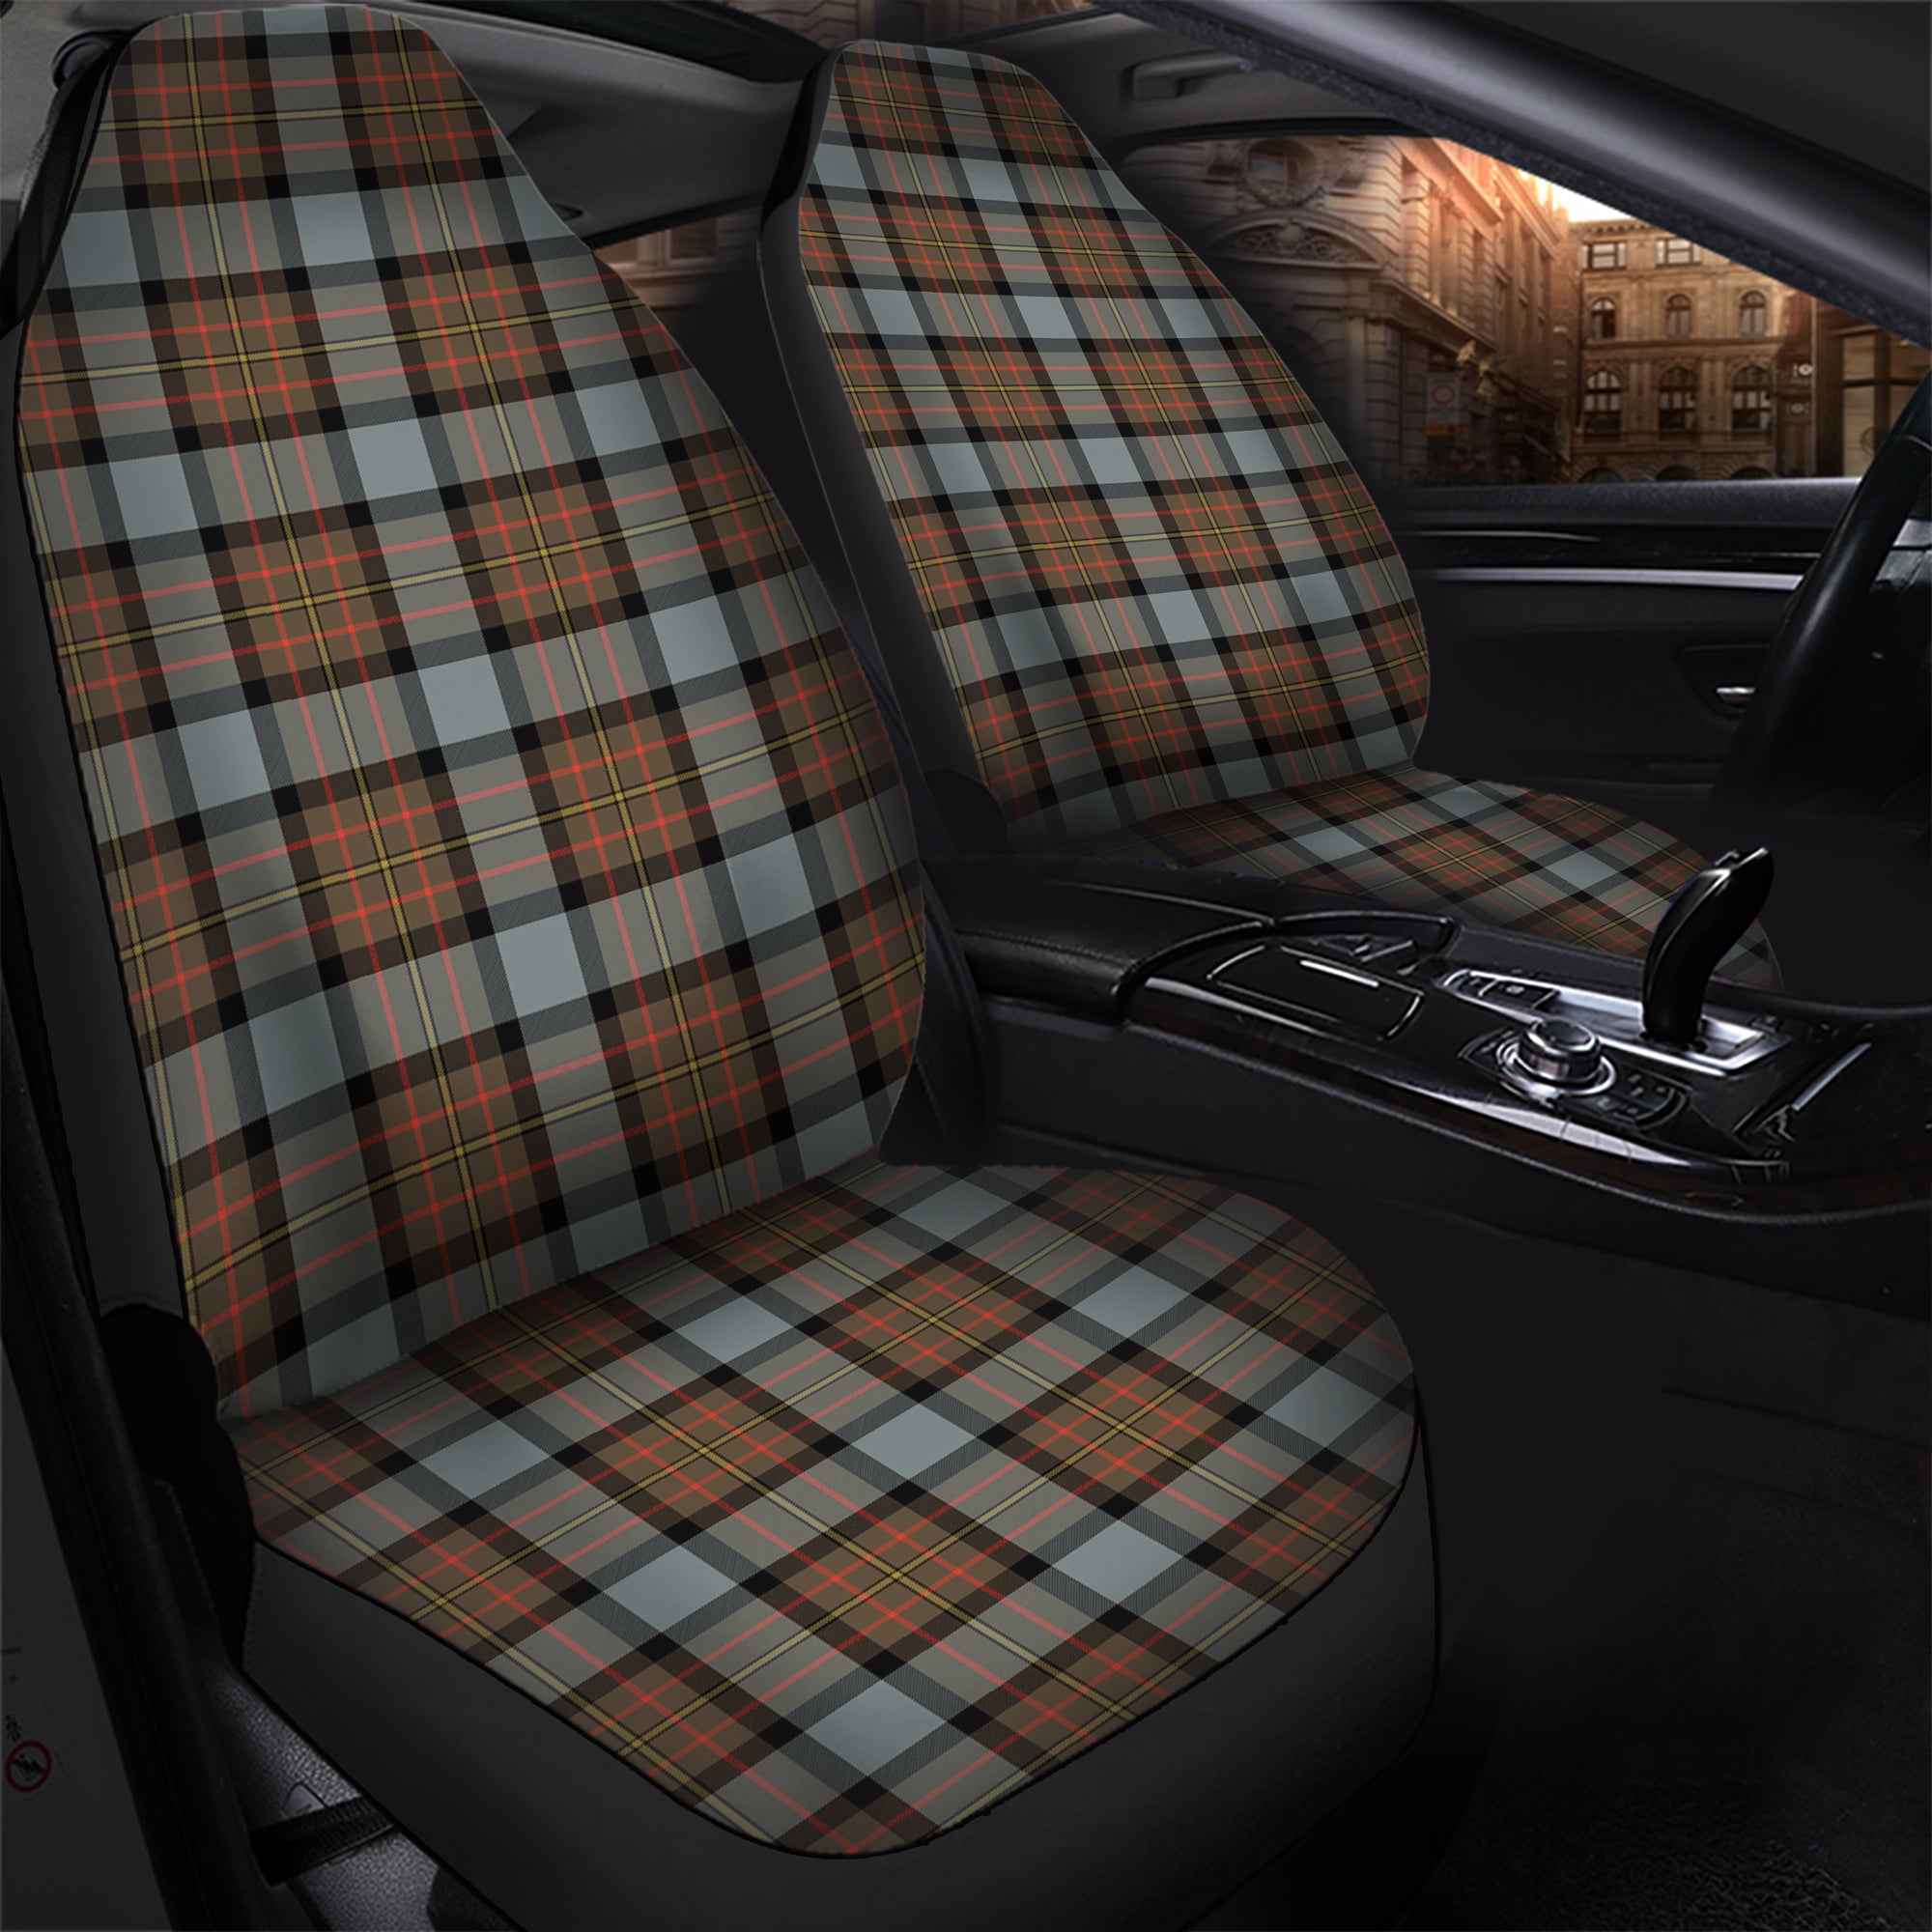 scottish-maclaren-weathered-clan-tartan-car-seat-cover